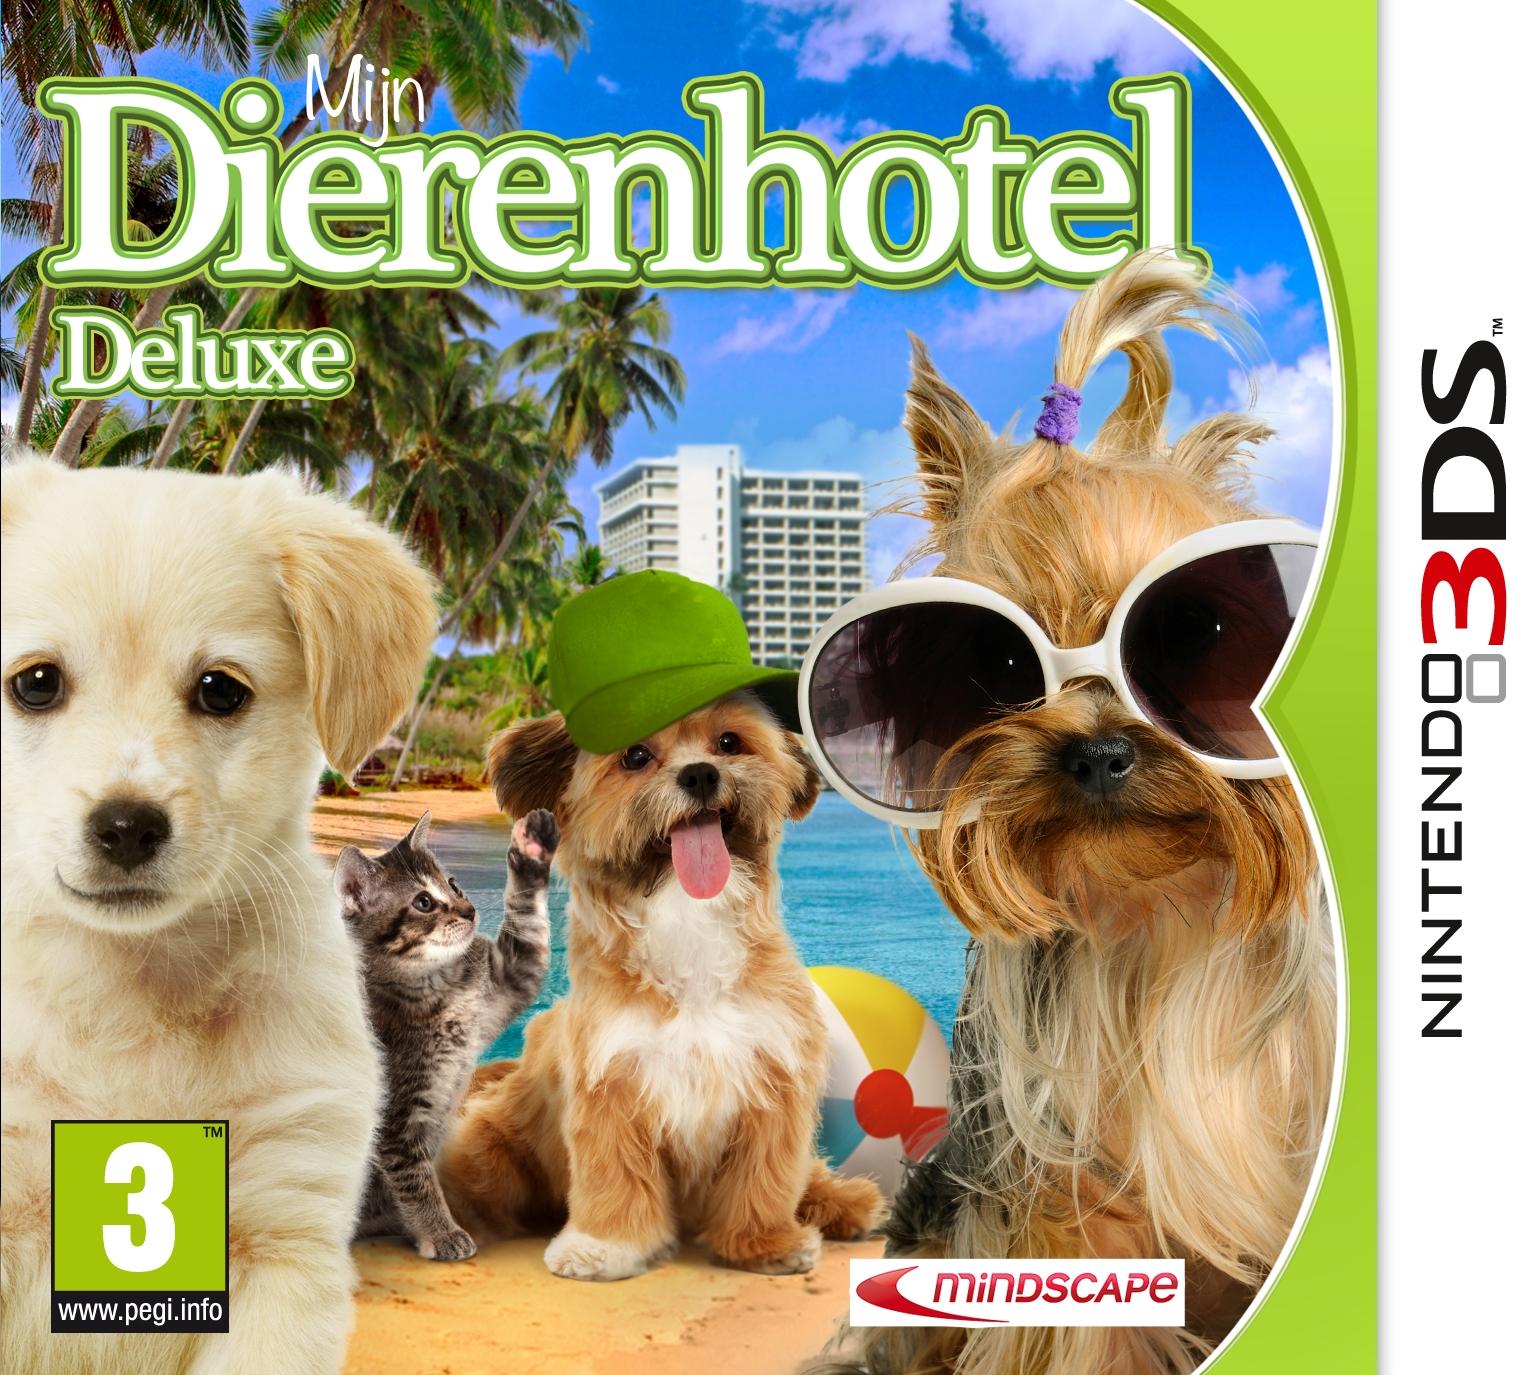 Mijn Dierenhotel Deluxe (3DS), Mindscape